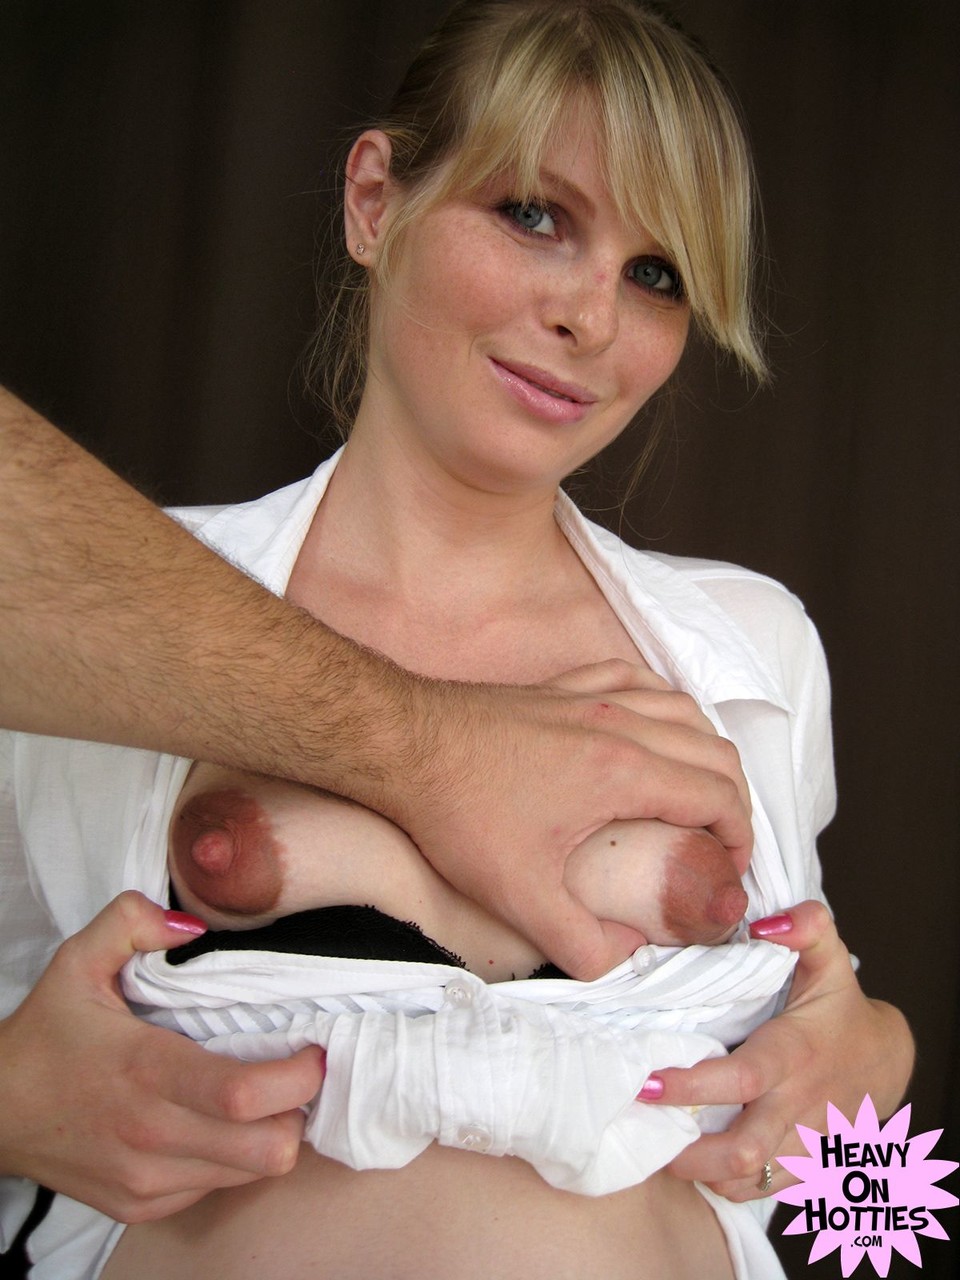 Sweet pregnant Ukrainian Wiska milks her big tits and gives a blowjob foto porno #428635793